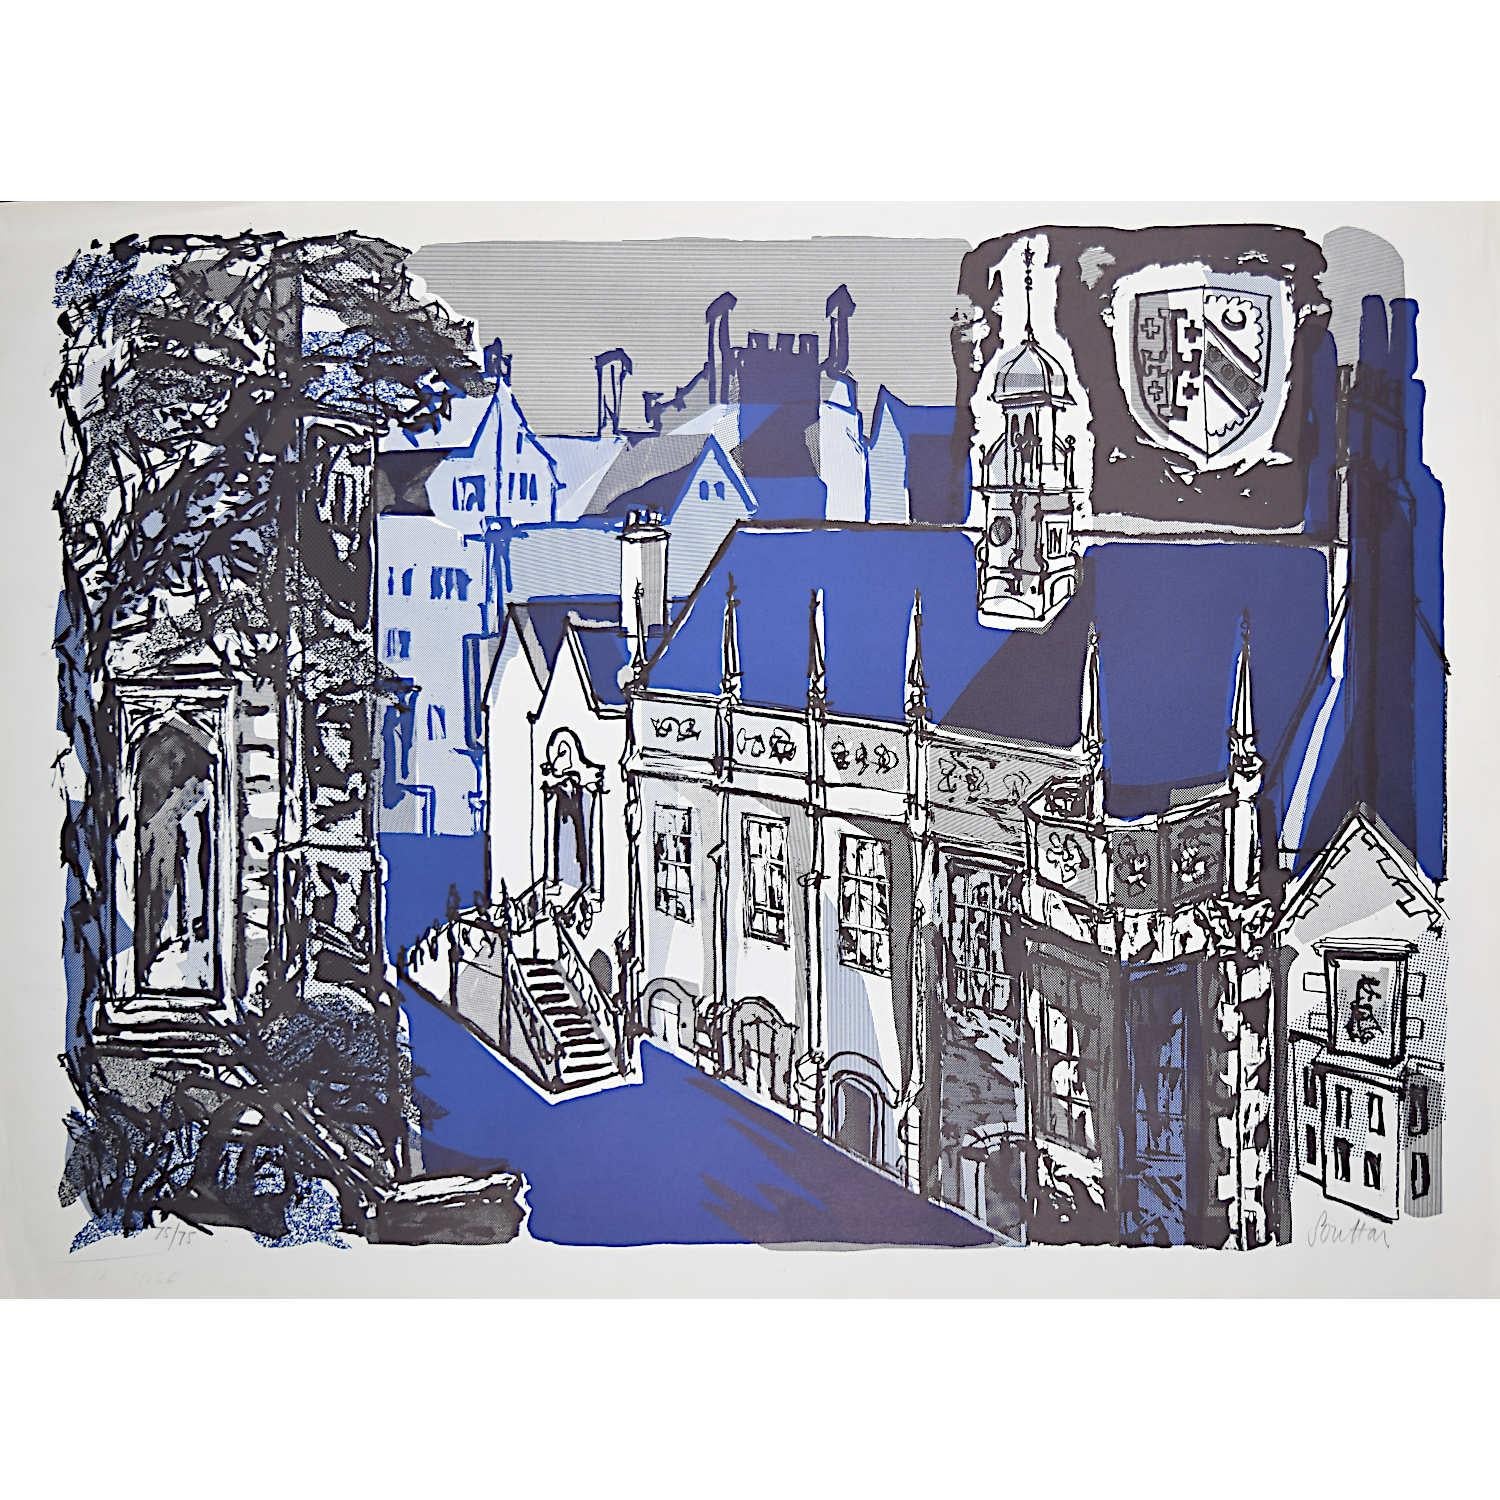 Margaret Souttar (1914-1987)
Selwyn College, Cambridge
Lithographie
77 x 56 cm

Signé au crayon en bas à droite.

Townes était un peintre et graveur écossais connu pour ses images de paysages urbains. Au début des années 1960, elle a été chargée de